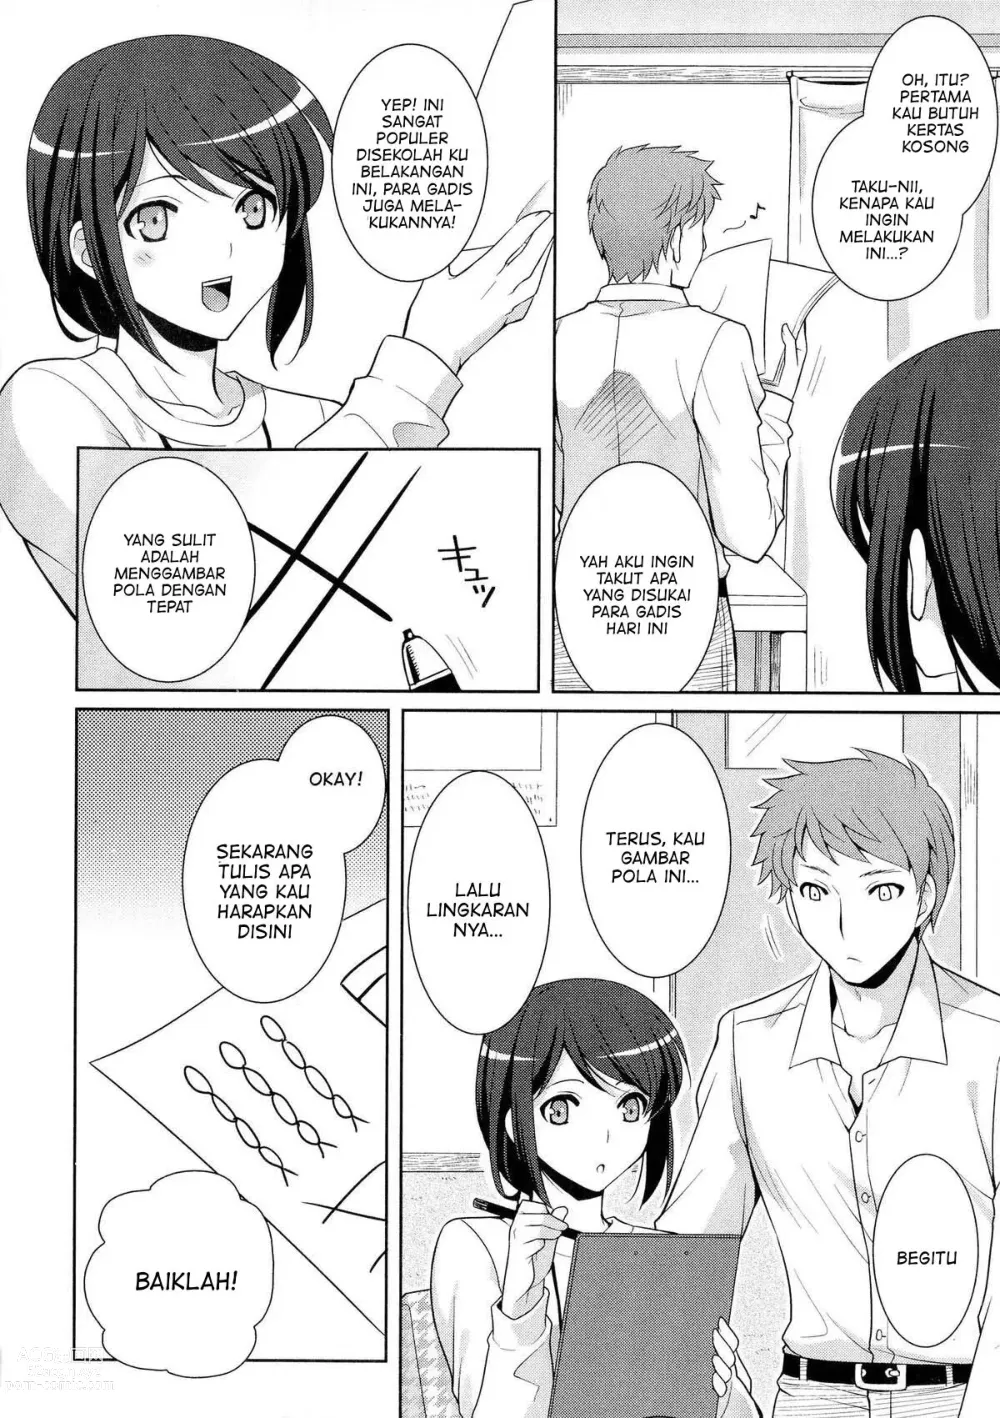 Page 2 of manga Omajinai wa Hodohodo ni!